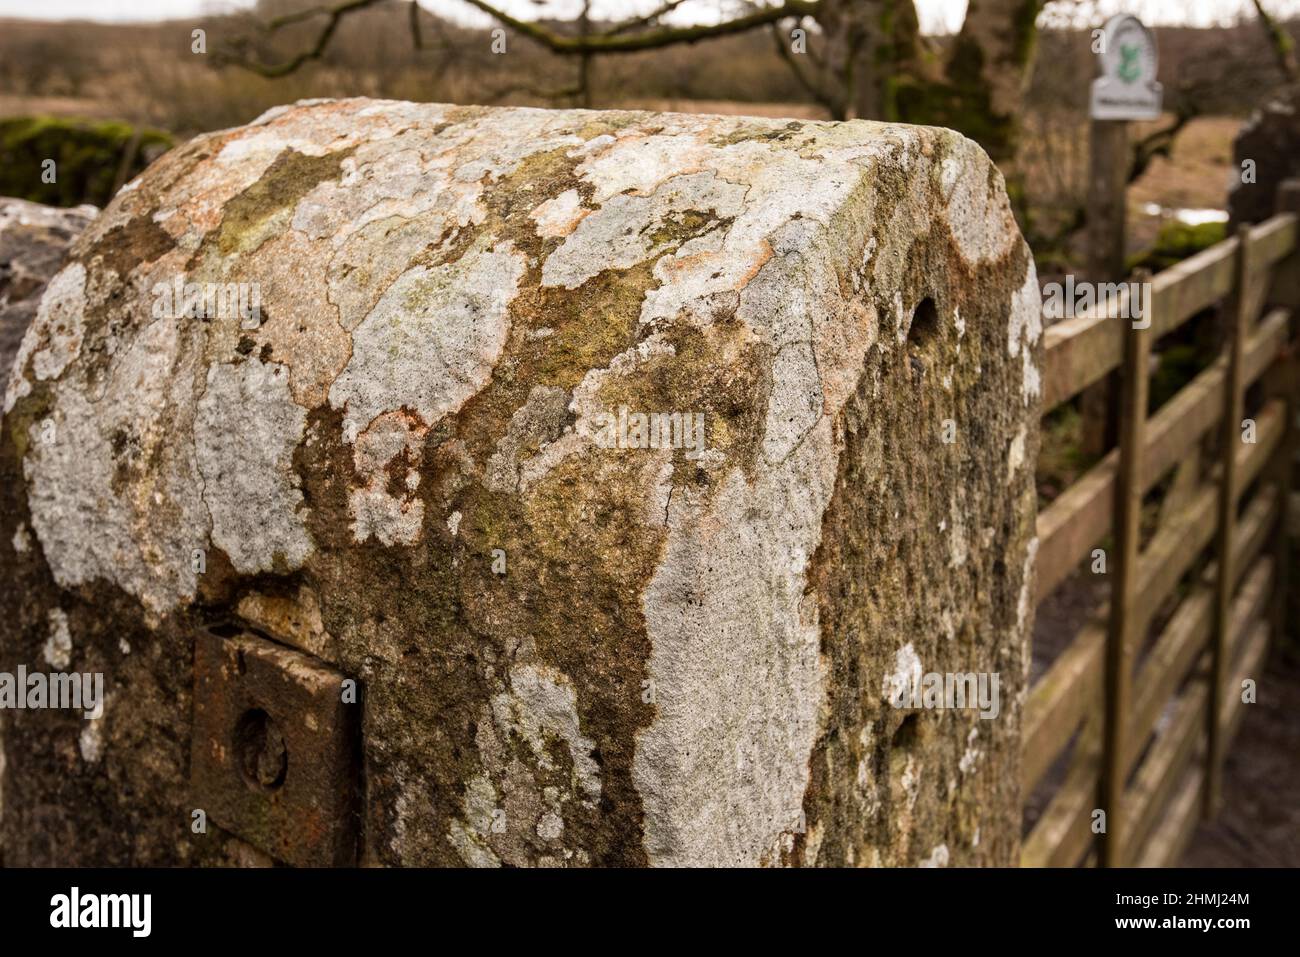 Modello astratto creato da lichen tipo growths su un montante di pietra verticale. Si trova in una zona ad aria pulita all'interno del Parco Nazionale Yorkshire Dales. Foto Stock